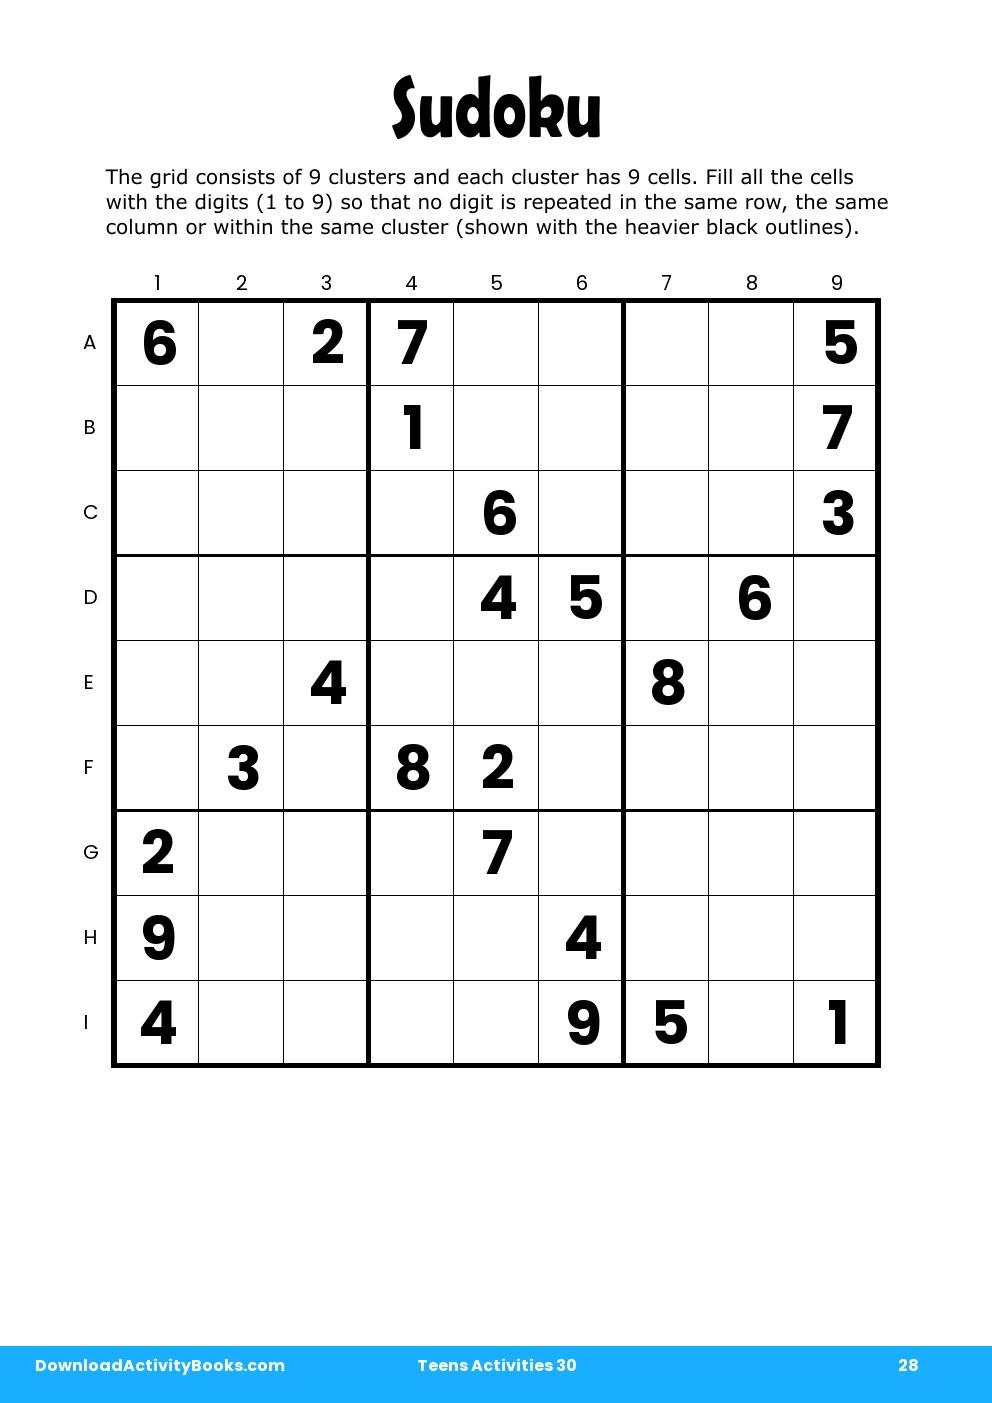 Sudoku in Teens Activities 30